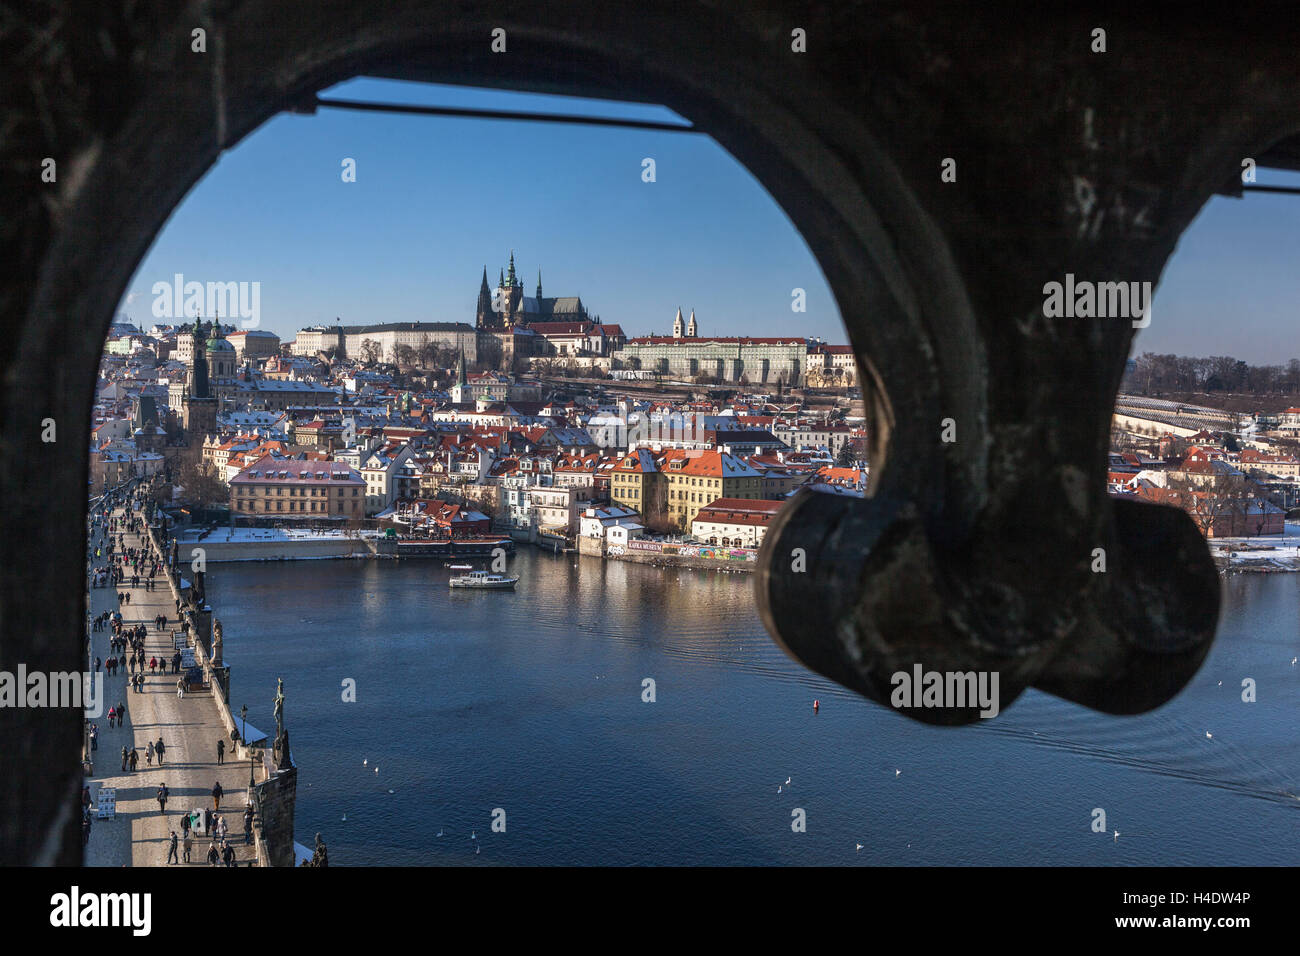 Vista del castillo de Praga desde una ventana al otro lado del río desde la Torre del Puente de Carlos de la Ciudad Vieja, Distrito de Mala Strana Hradcany Praga arquitectura de la República Checa Foto de stock